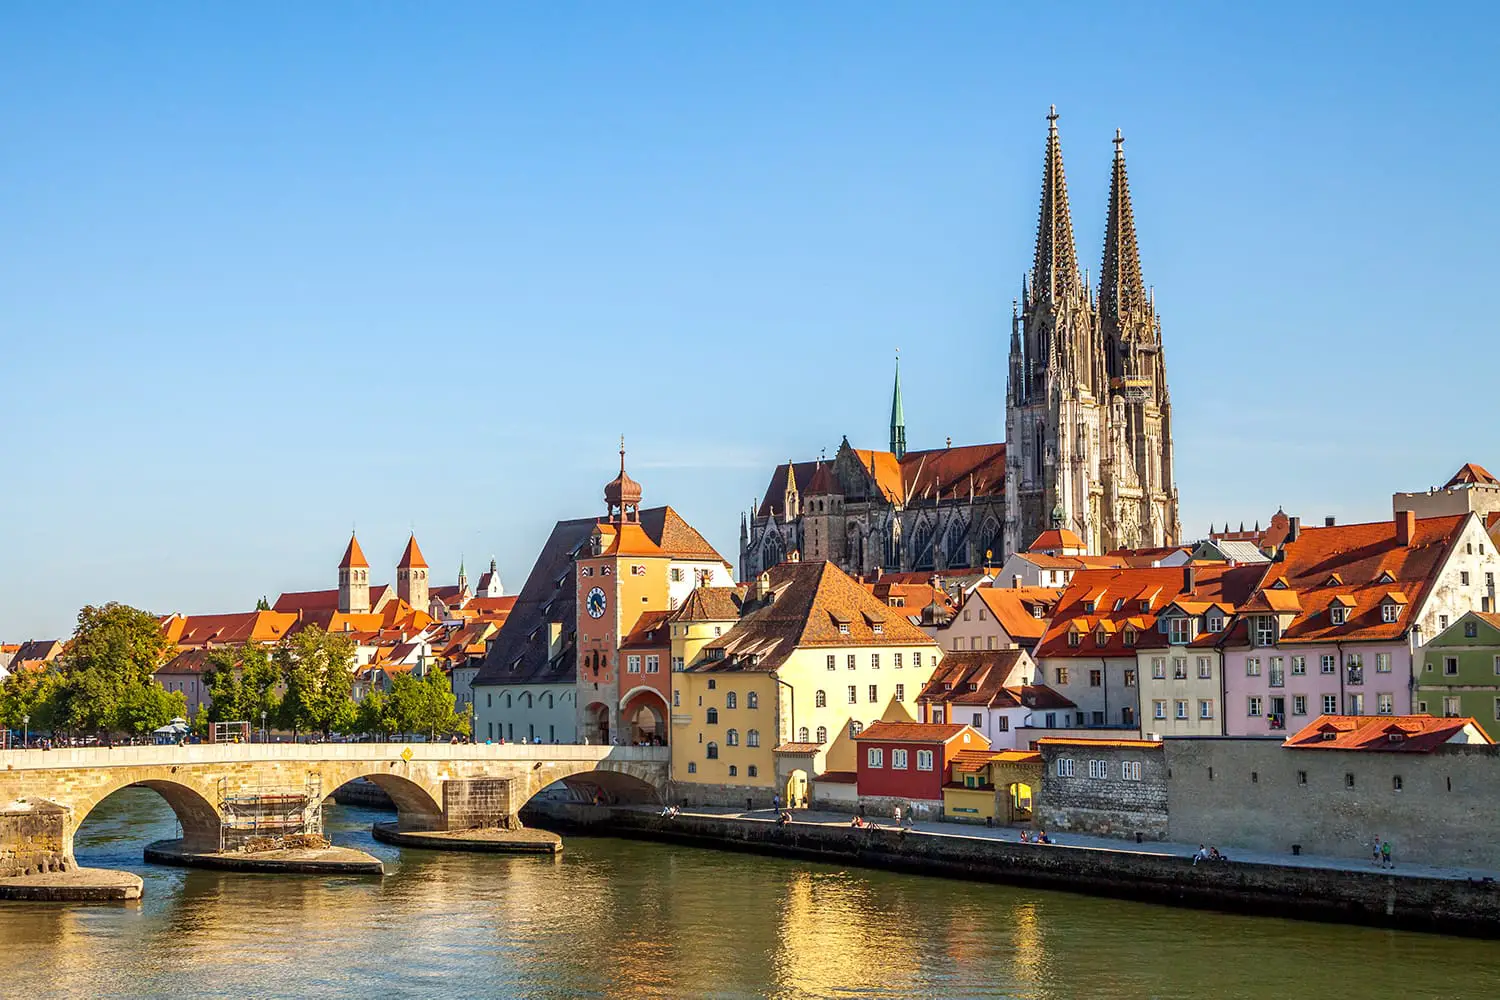 Riverfront in Regensburg, Germany